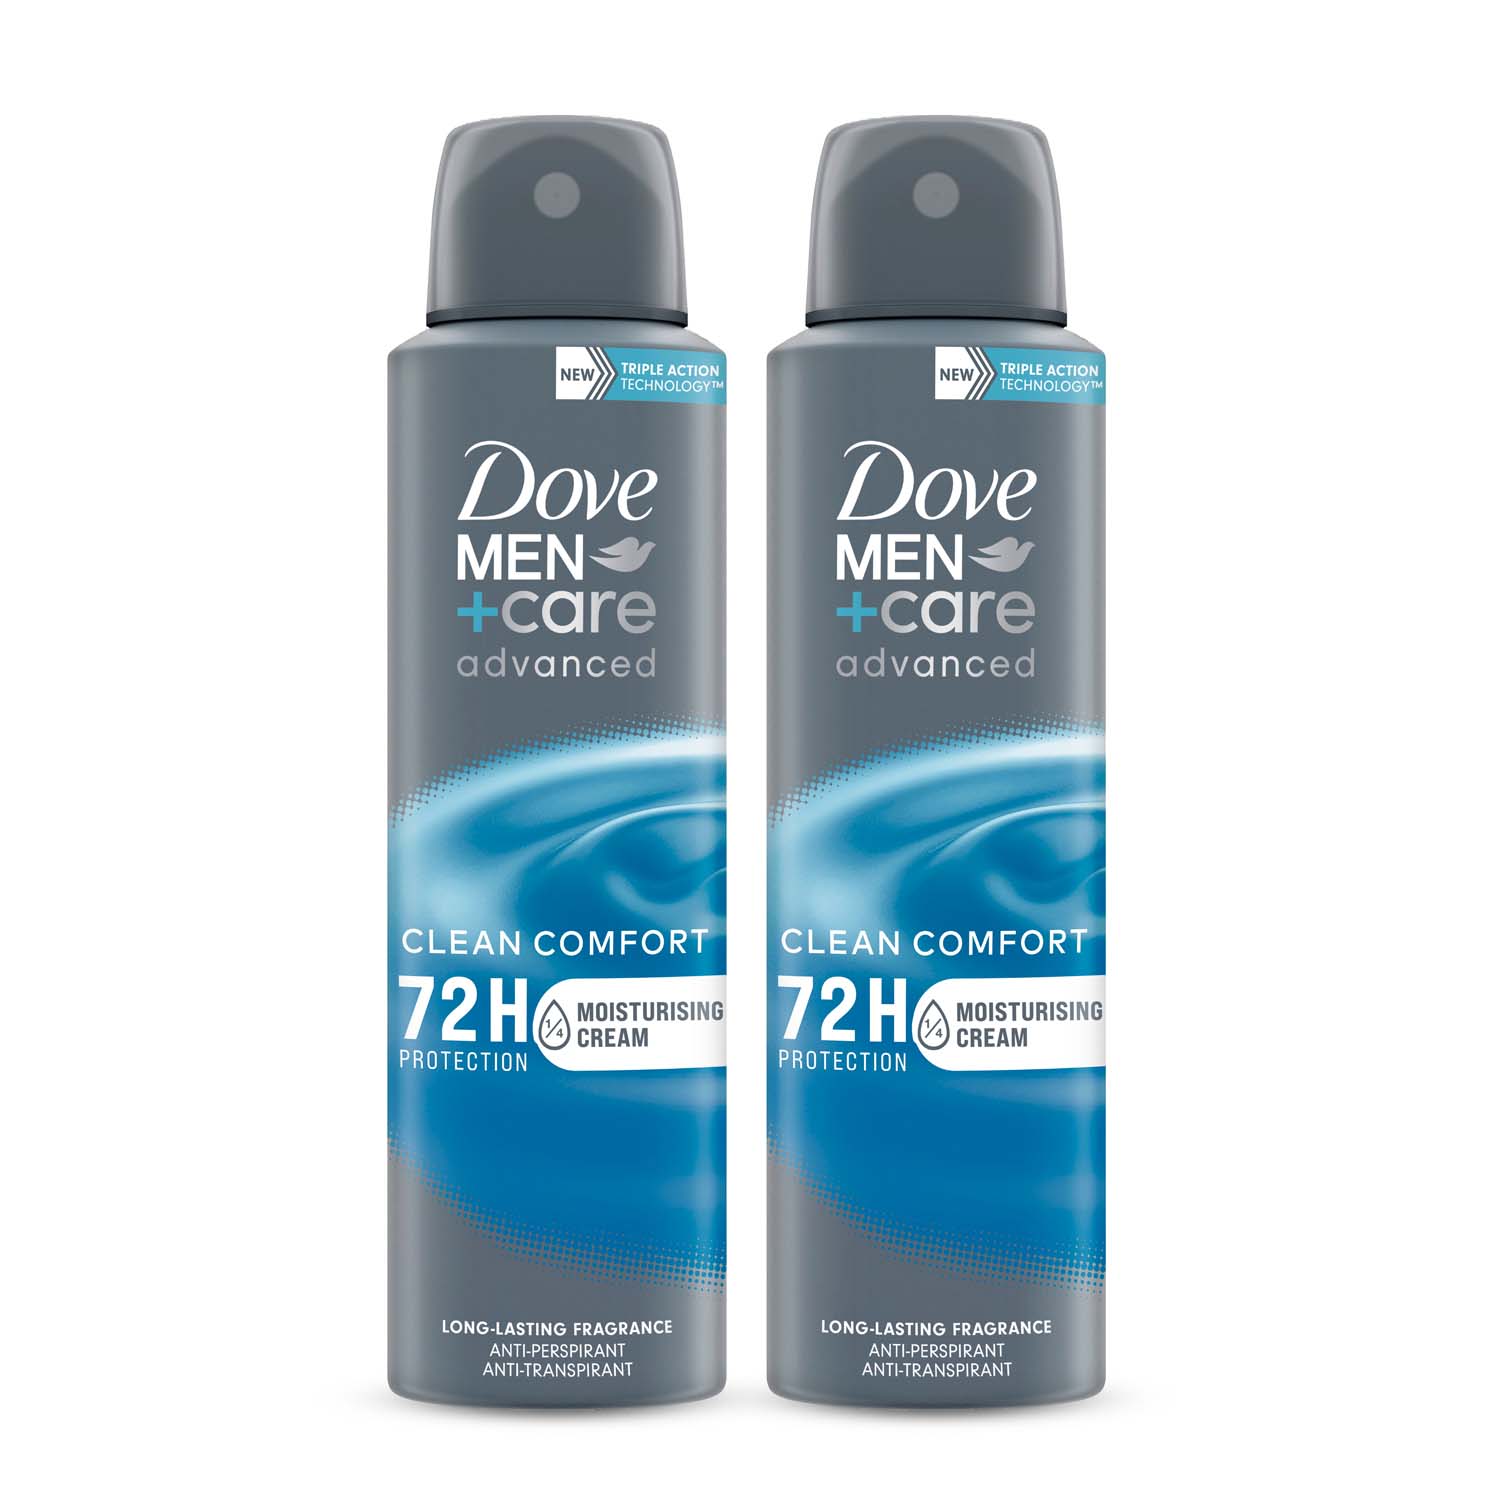 Pack de 2 desodorantes Dove Men +Care Advanced Clean Comfort por sólo 4.91€ ¡¡30% de descuento!!